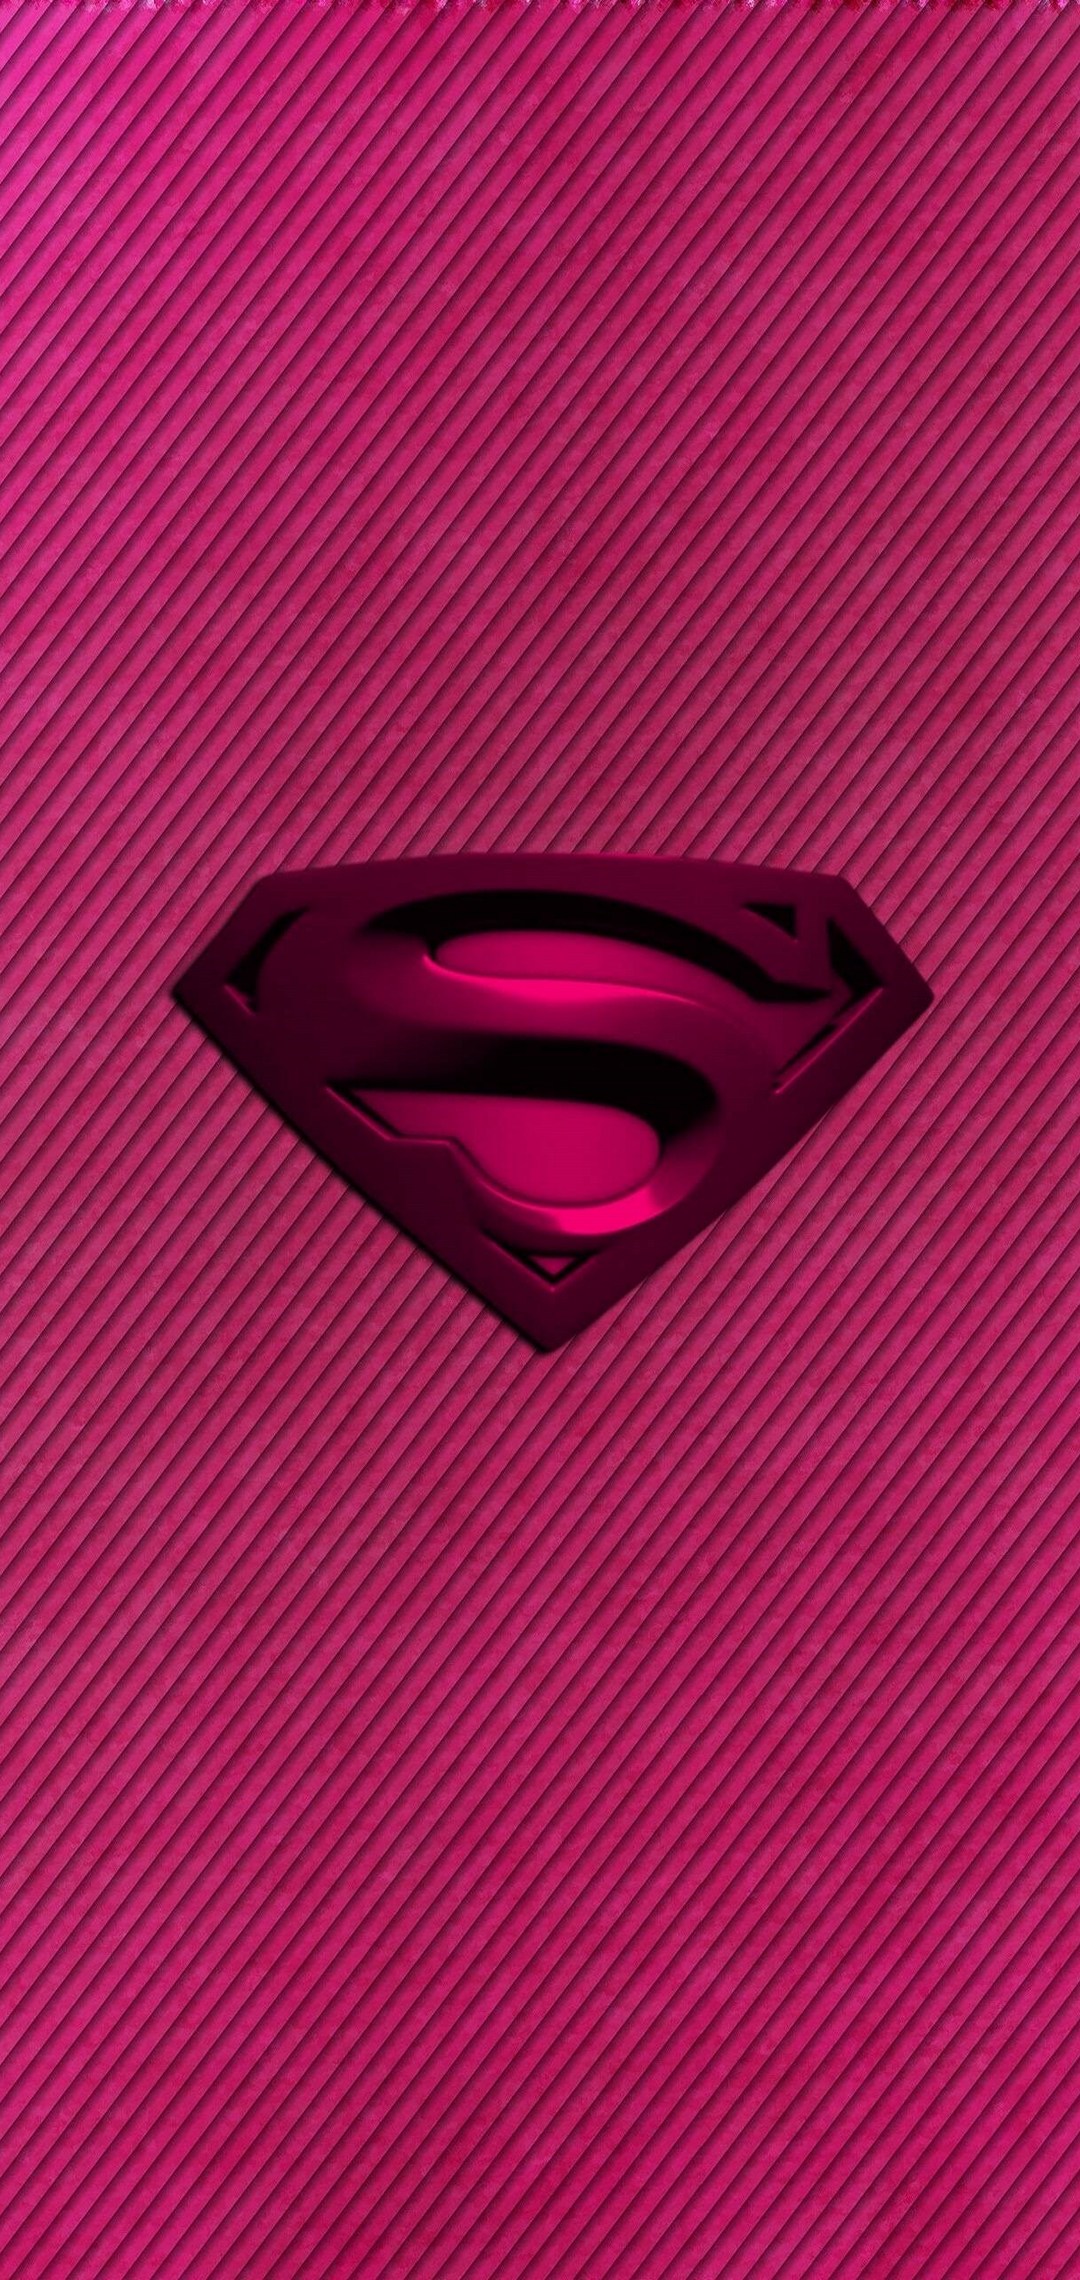 スーパーマン エンブレム ピンク ボーダー Aquos Sense4 Androidスマホ壁紙 待ち受け スマラン